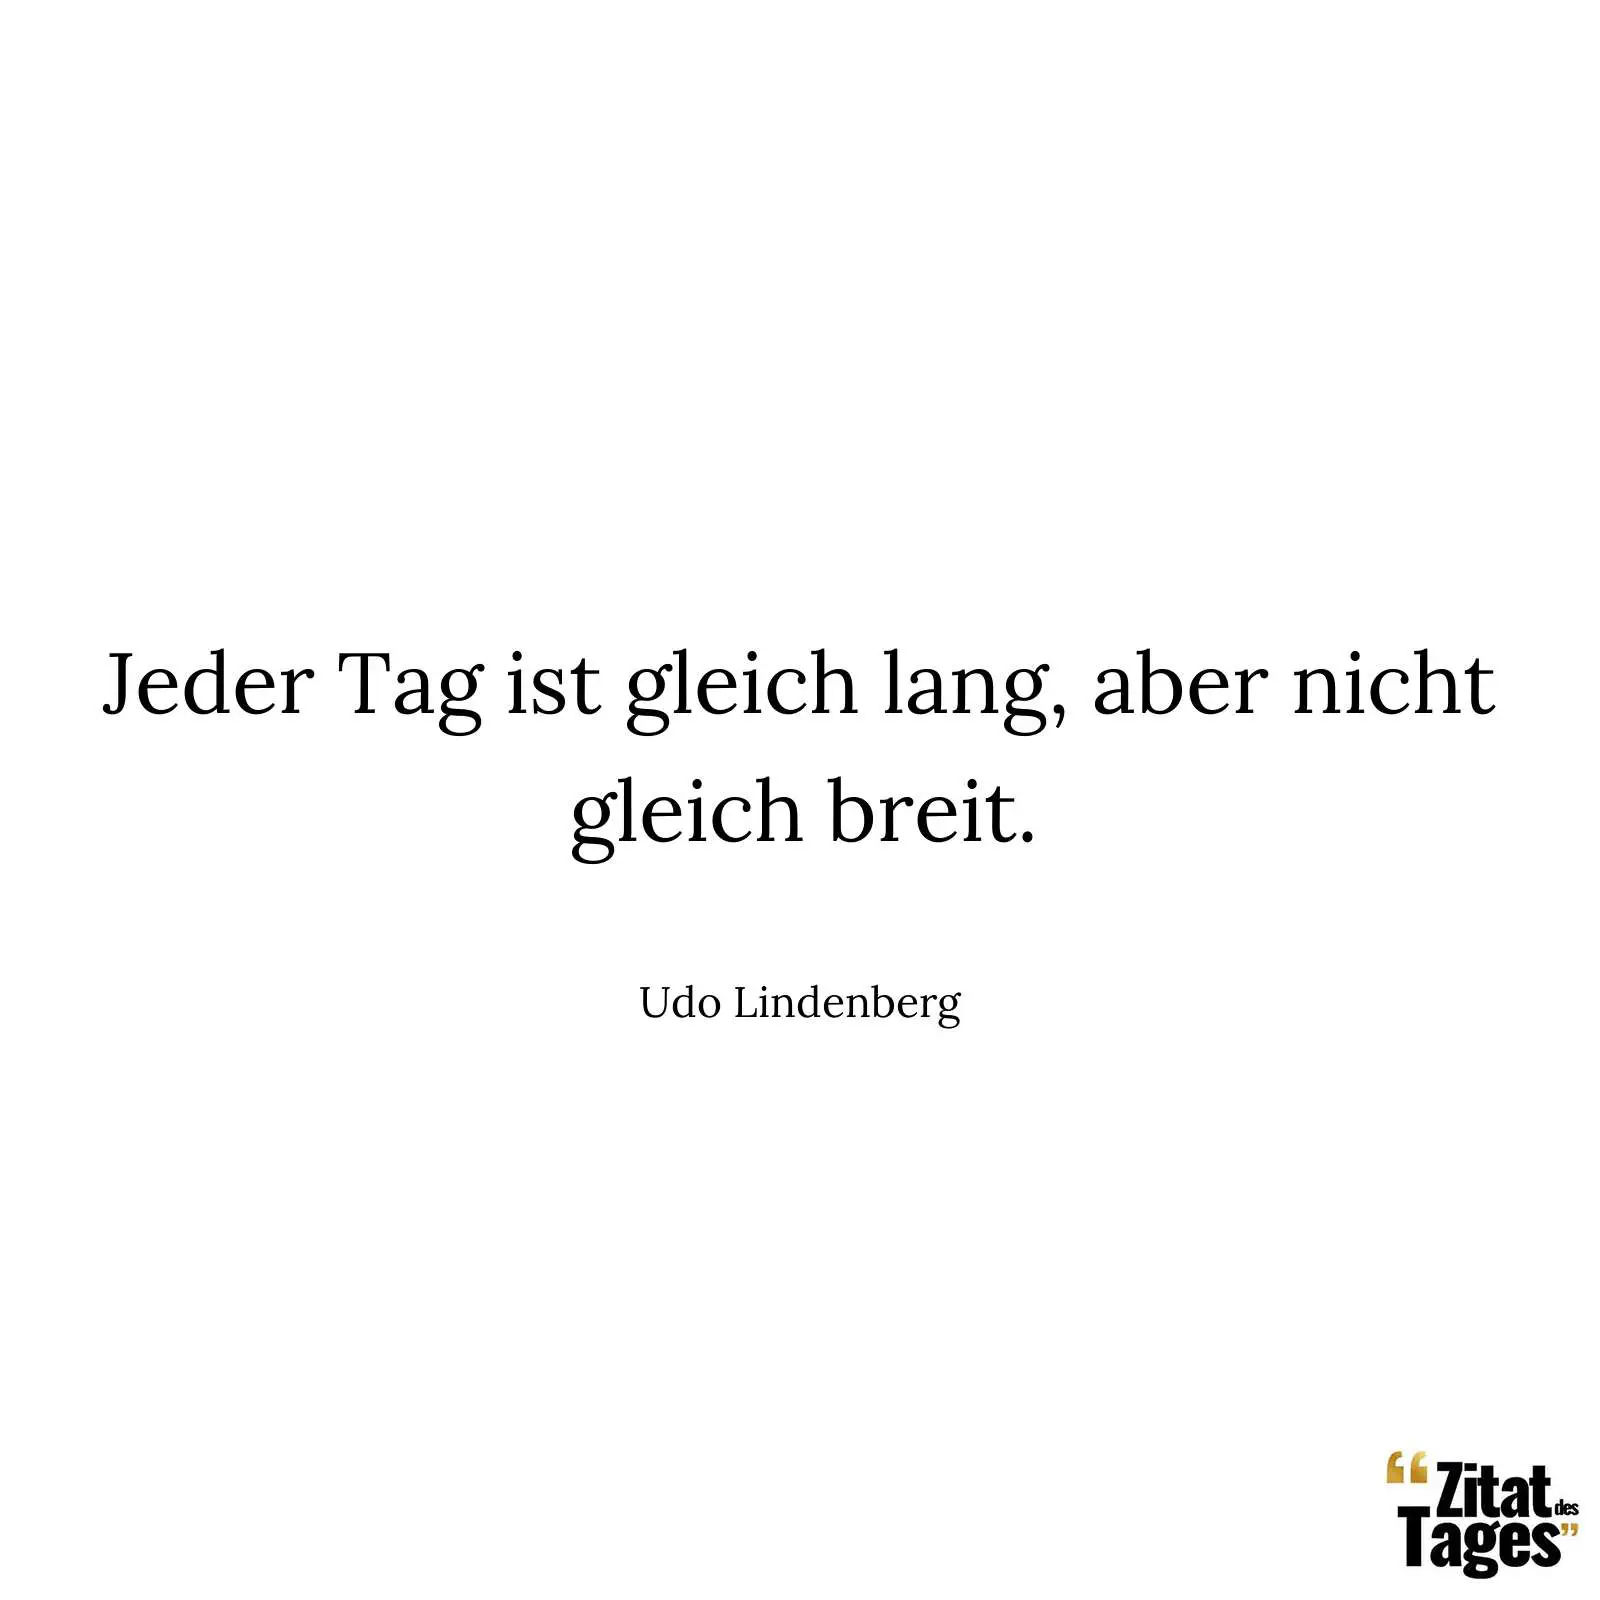 Jeder Tag ist gleich lang, aber nicht gleich breit. - Udo Lindenberg